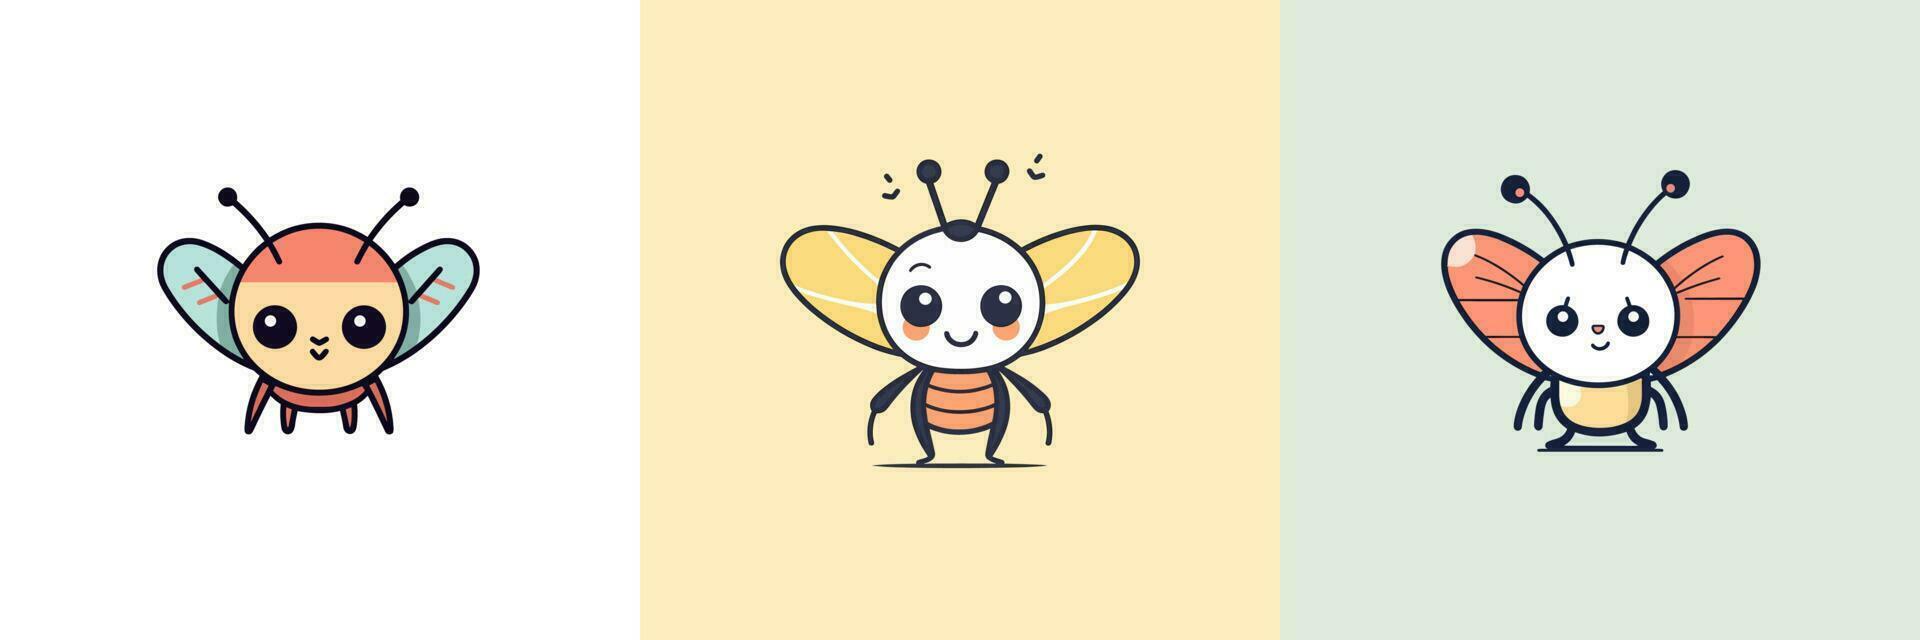 mignonne kawaii insecte Bugs dessin animé illustration vecteur